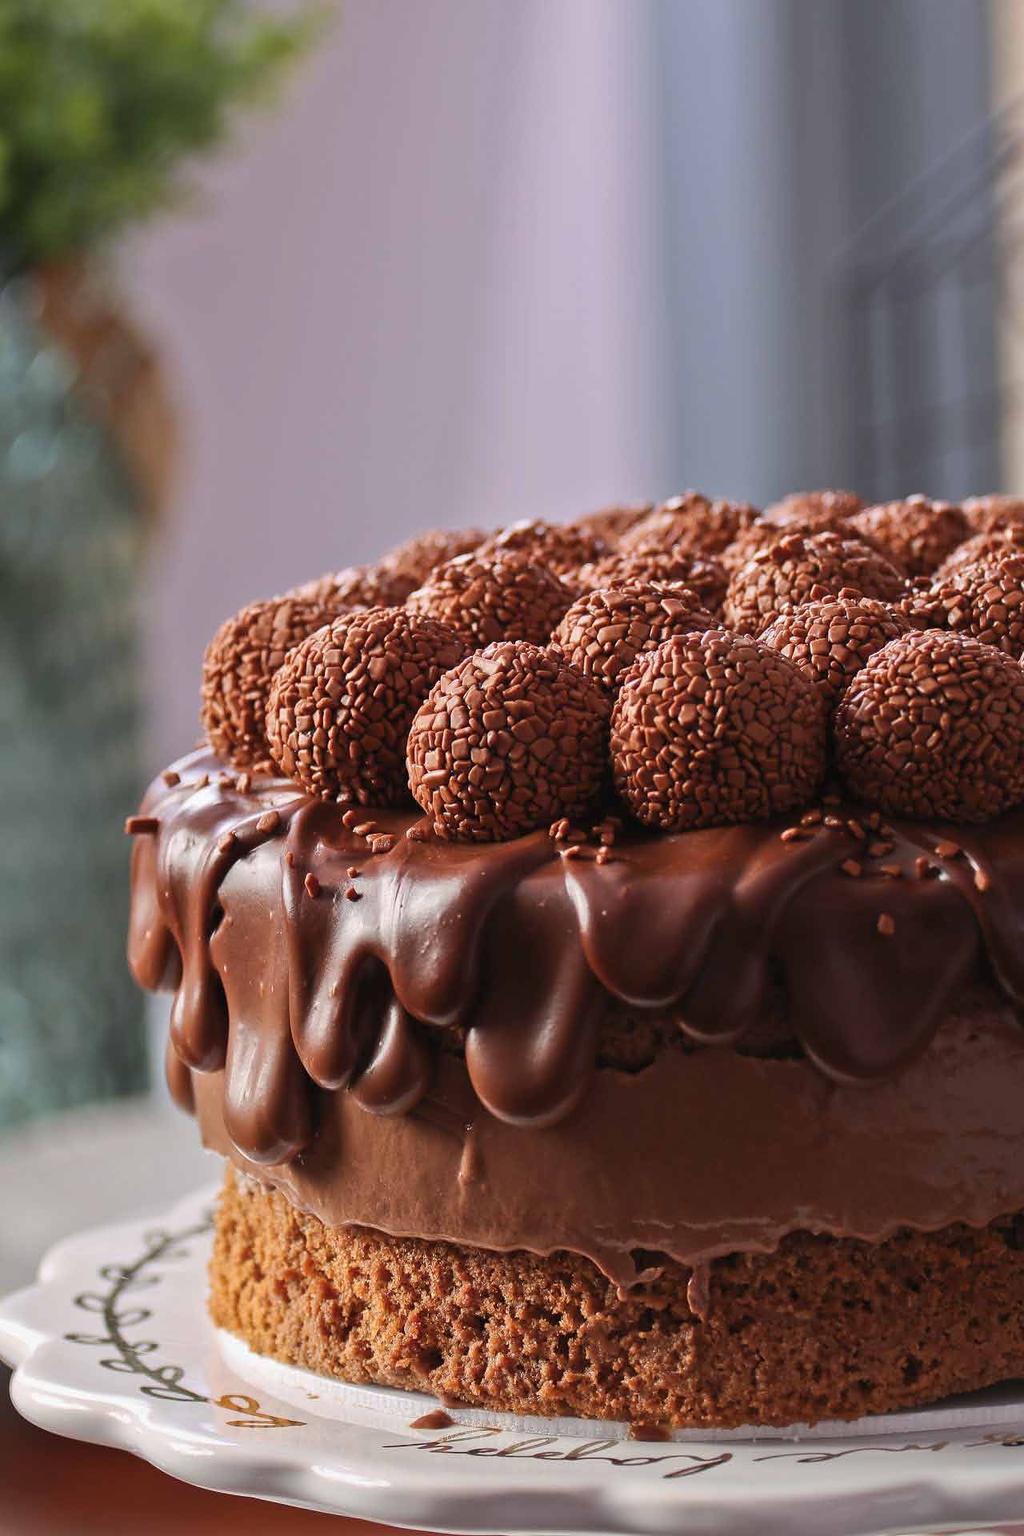 TRUFADO 100% Chocolate com licor especial que salienta o sabor intenso deste bolo. Deixe seu Bolo muito mais bonito e saboroso com o adicional de frutas vermelhas ou brigadeiros.